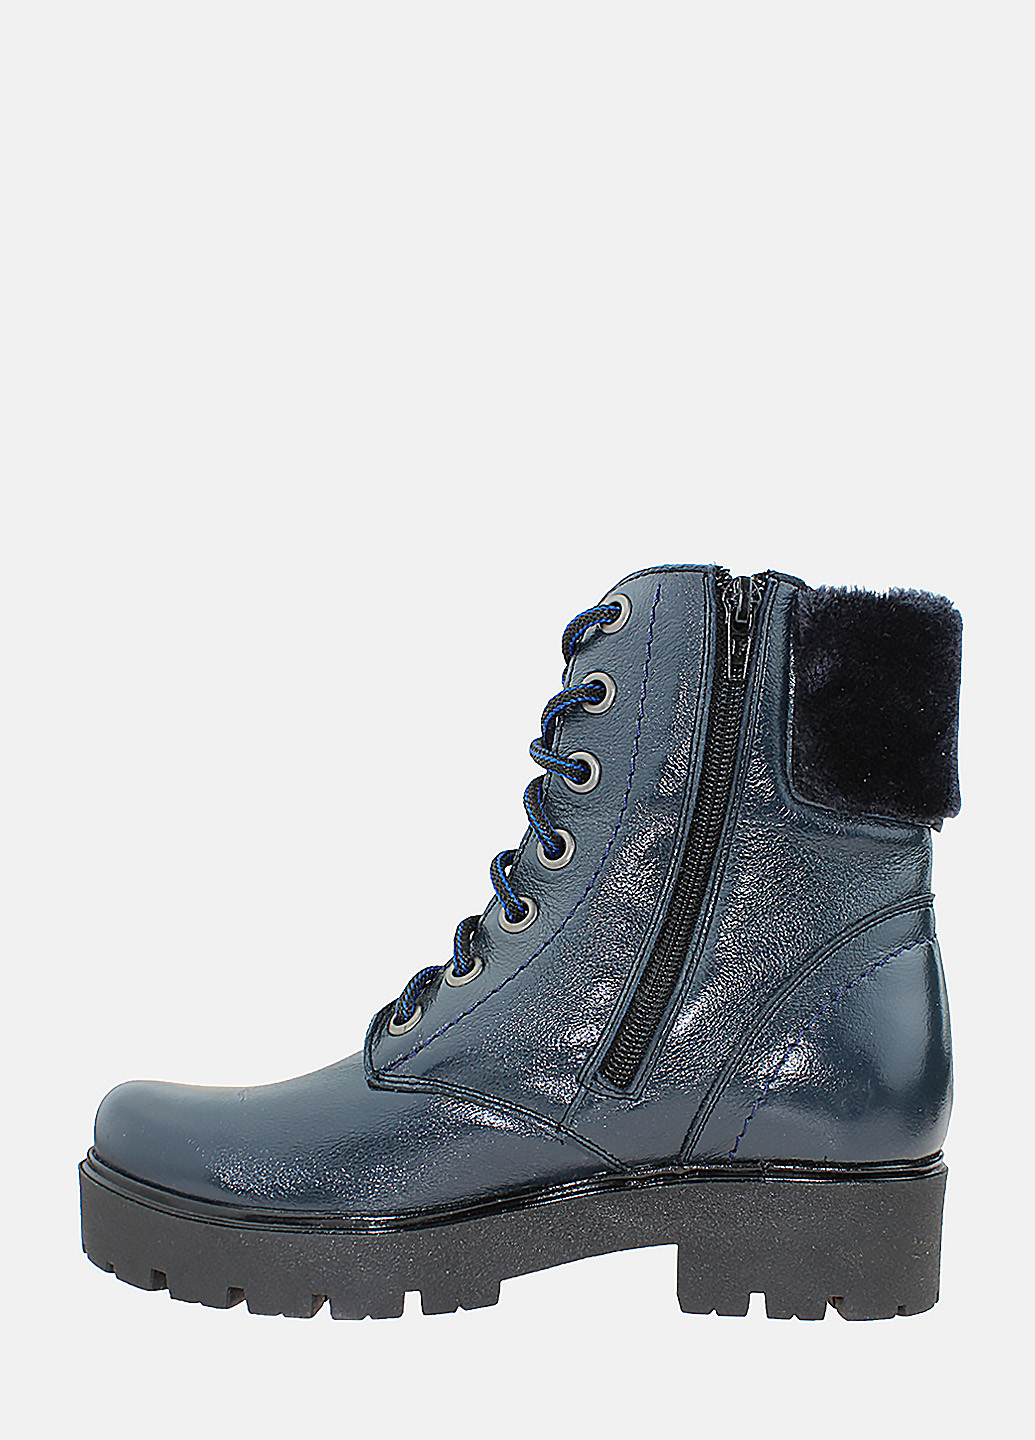 Зимние ботинки rp214 синий Prellesta